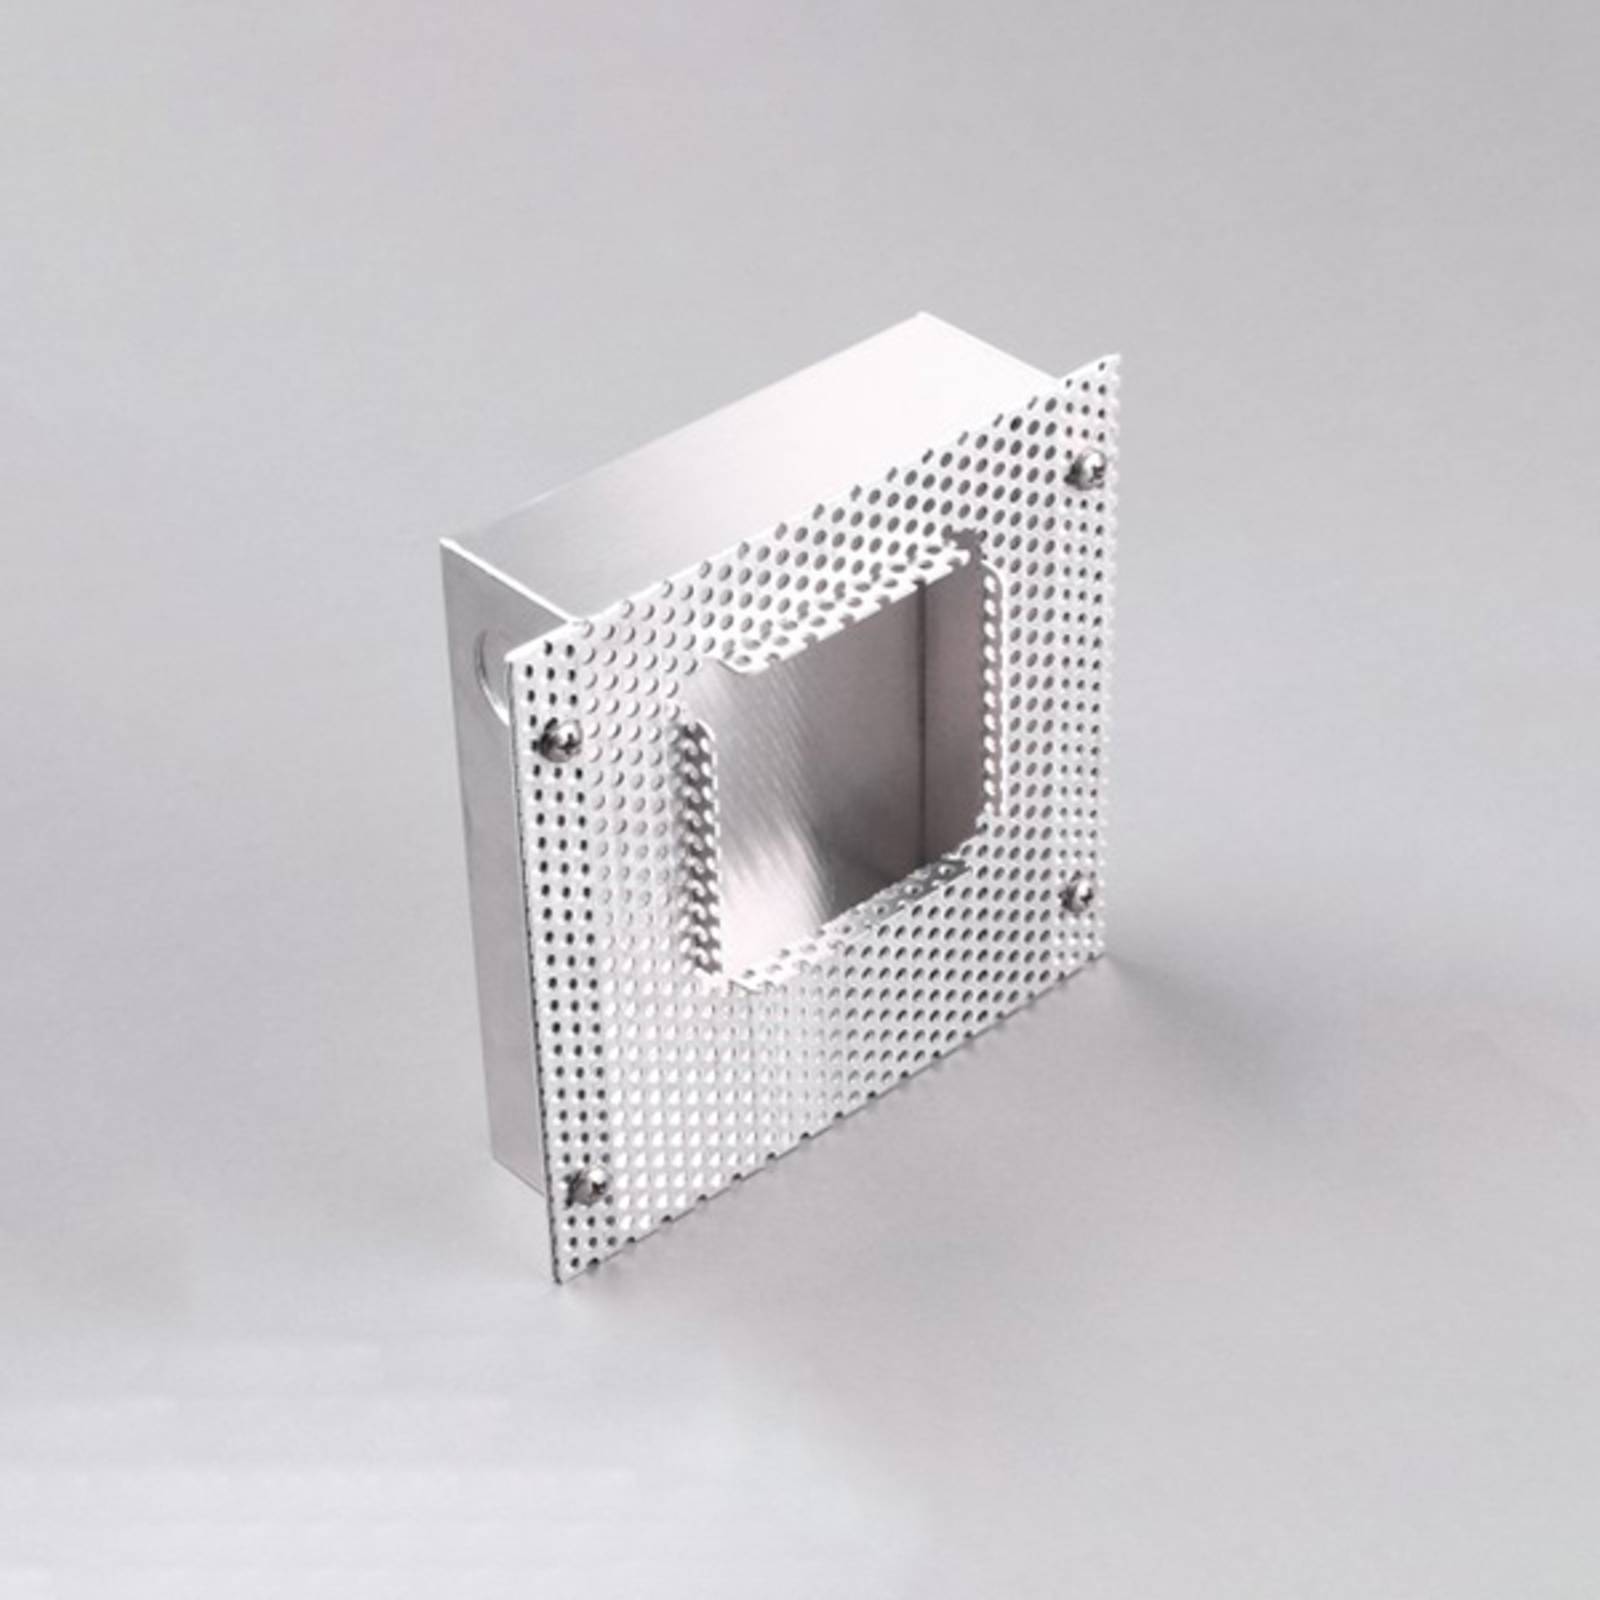 Einbaugehäuse für LED-Einbauleuchten Window/Pan von Molto Luce